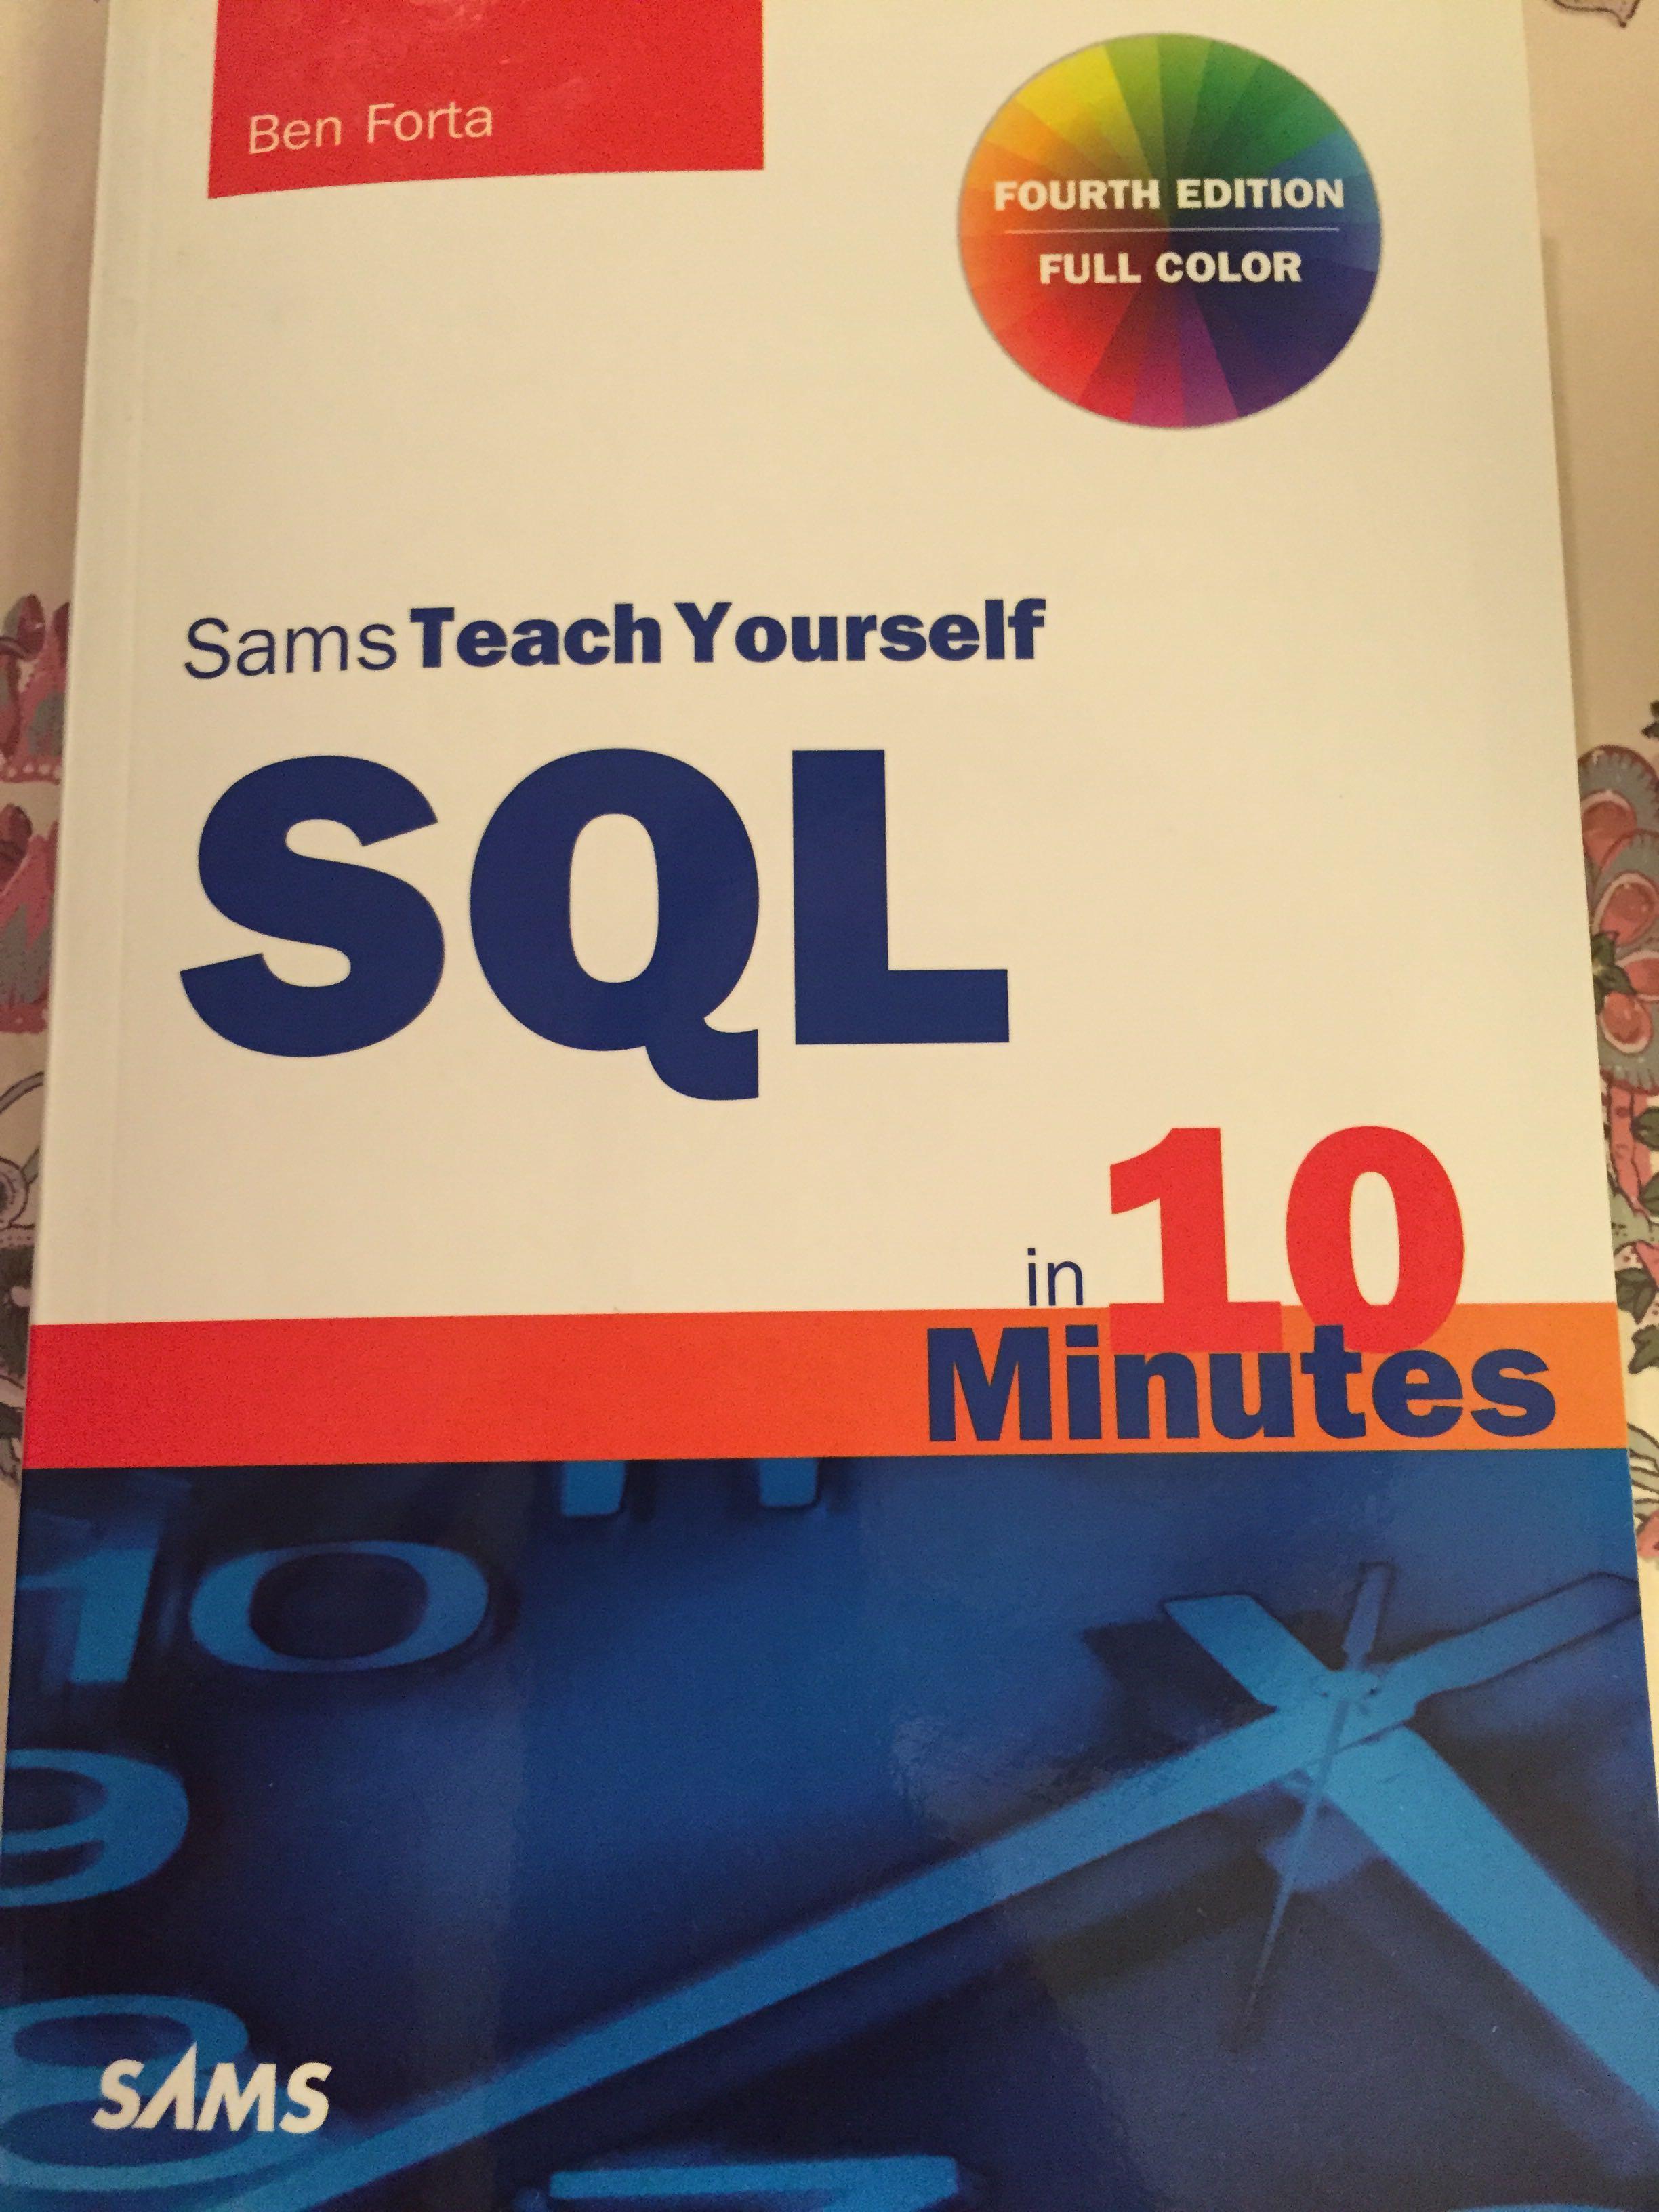 如何学习 SQL 语言? - 数据库 - 知乎